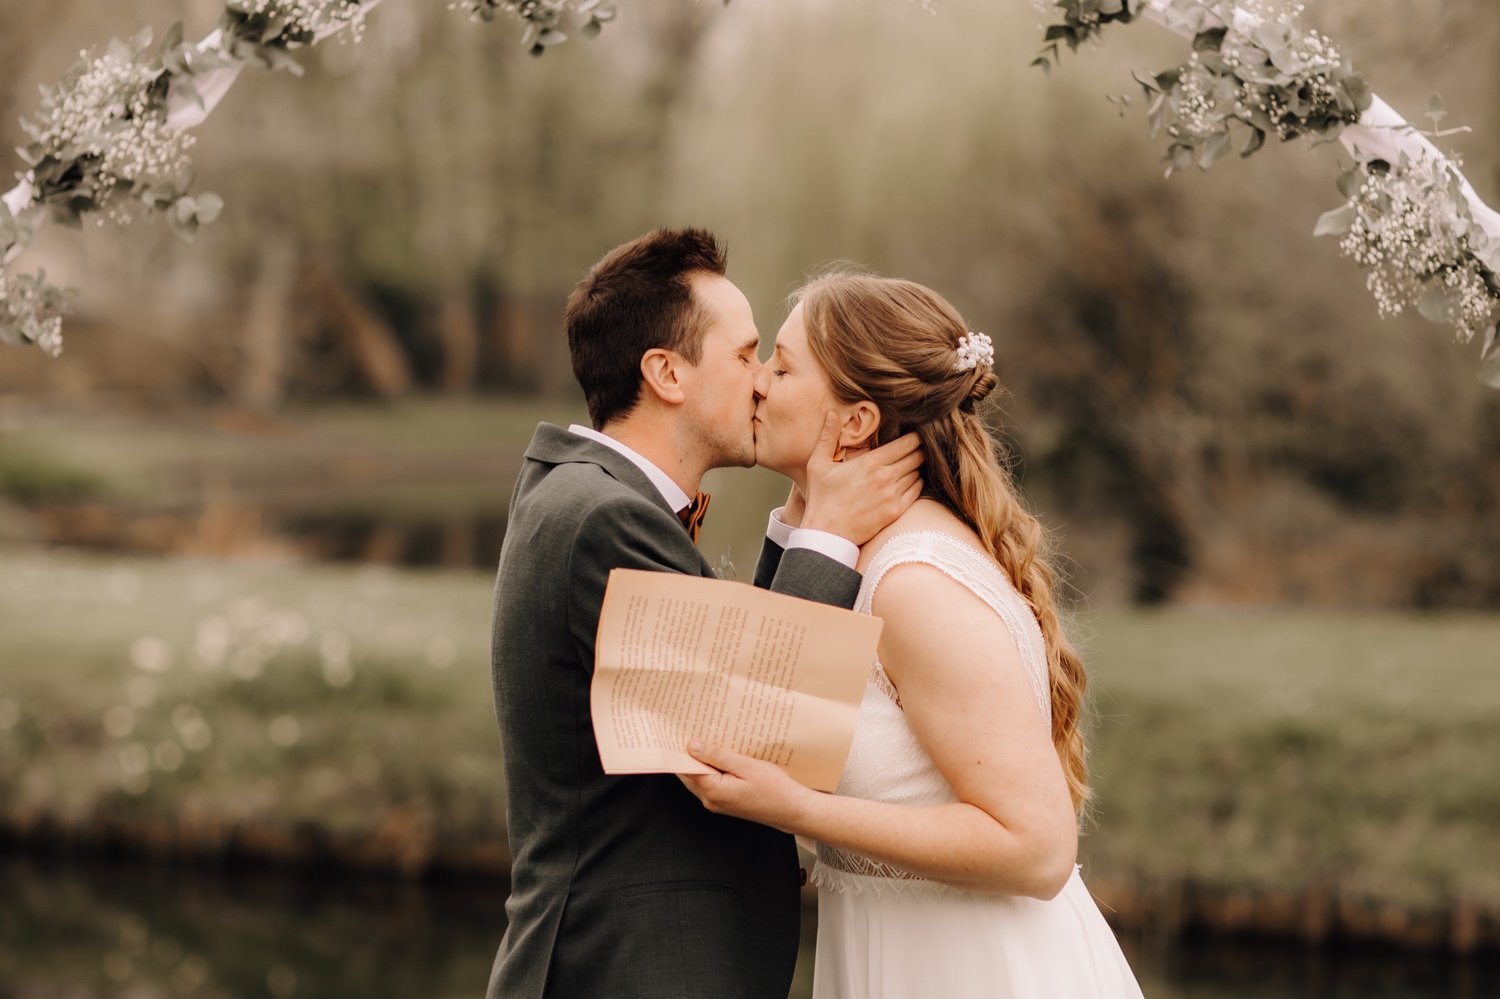 Huwelijksfotograaf Limburg - bruidspaar kust elkaar onder bloemenboog